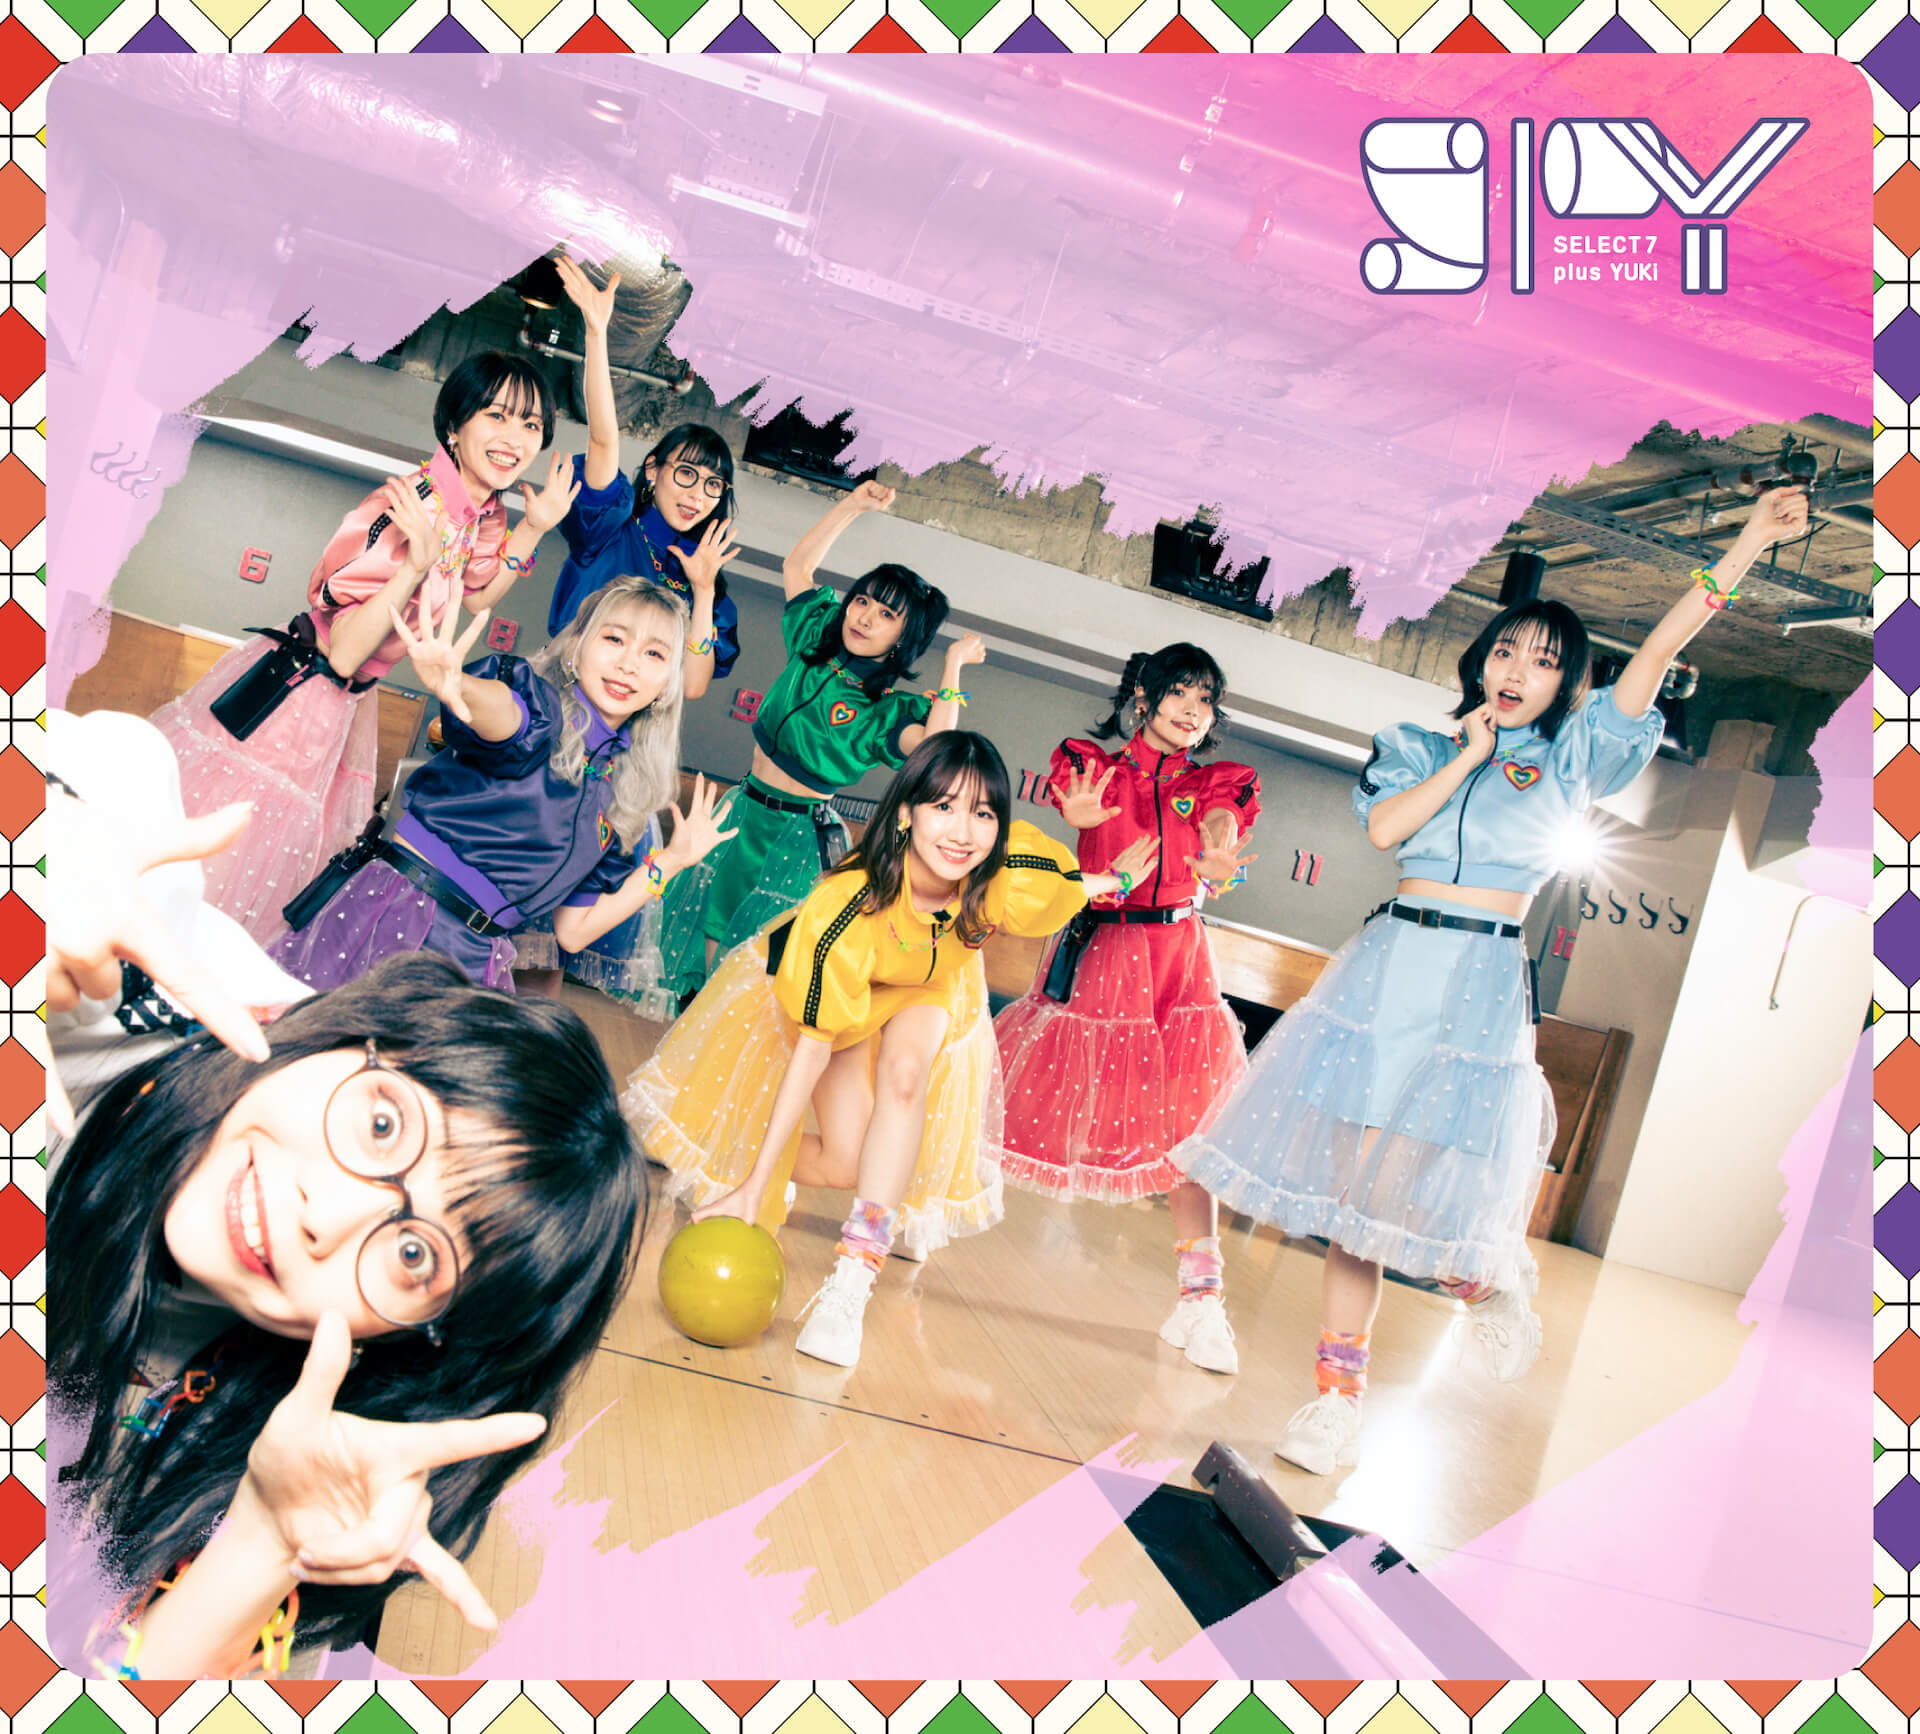 柏木由紀プロデュース・SPY、AKB48のカバー“大声ダイヤモンド”のパフォーマンス動画が公開 music220530-spy-3